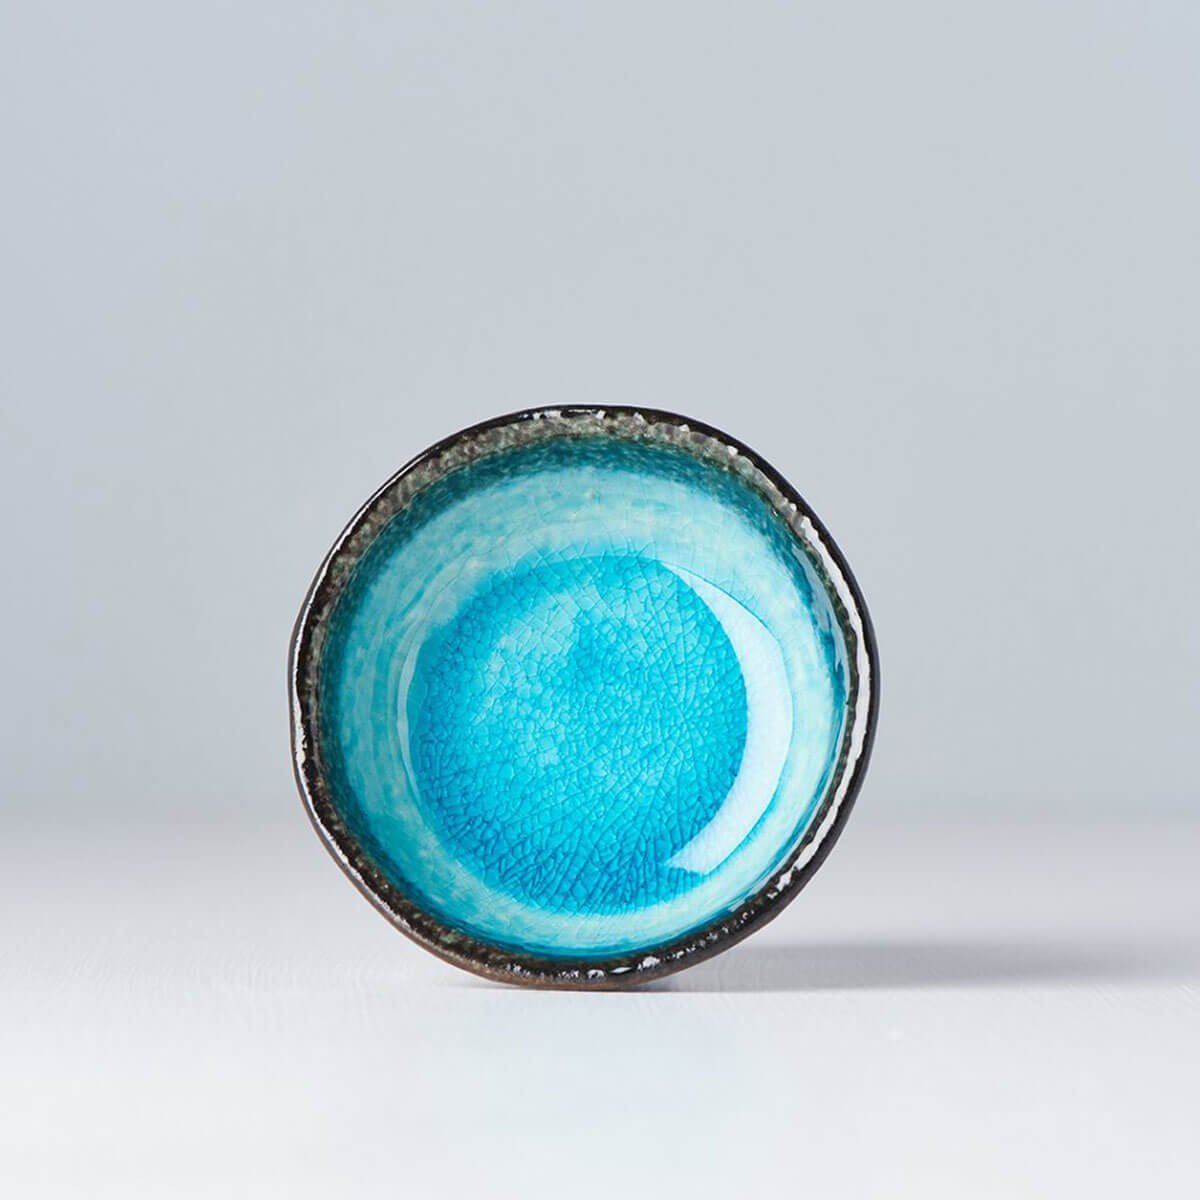 Keramik Made Japan Made ml, sky MIJ Servierschüssel - in blue in Japan Bowl 50